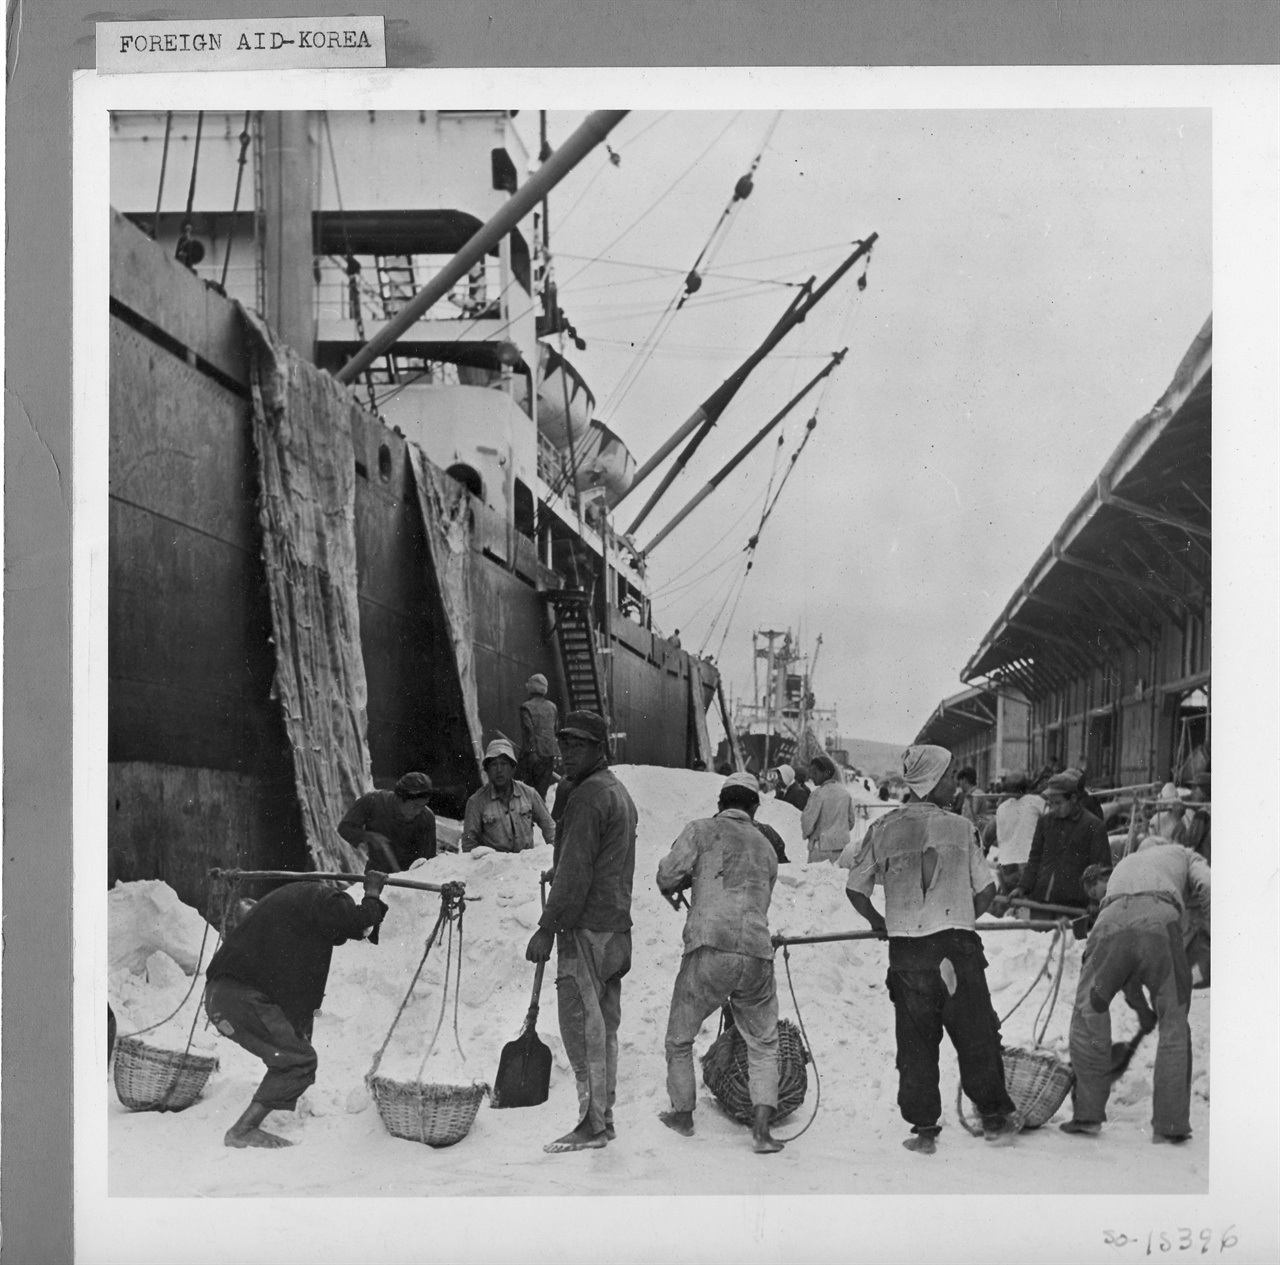  1950. 부산항 부두 노동자들이 미국 원조 물자를 등짐으로 나르고 있다.